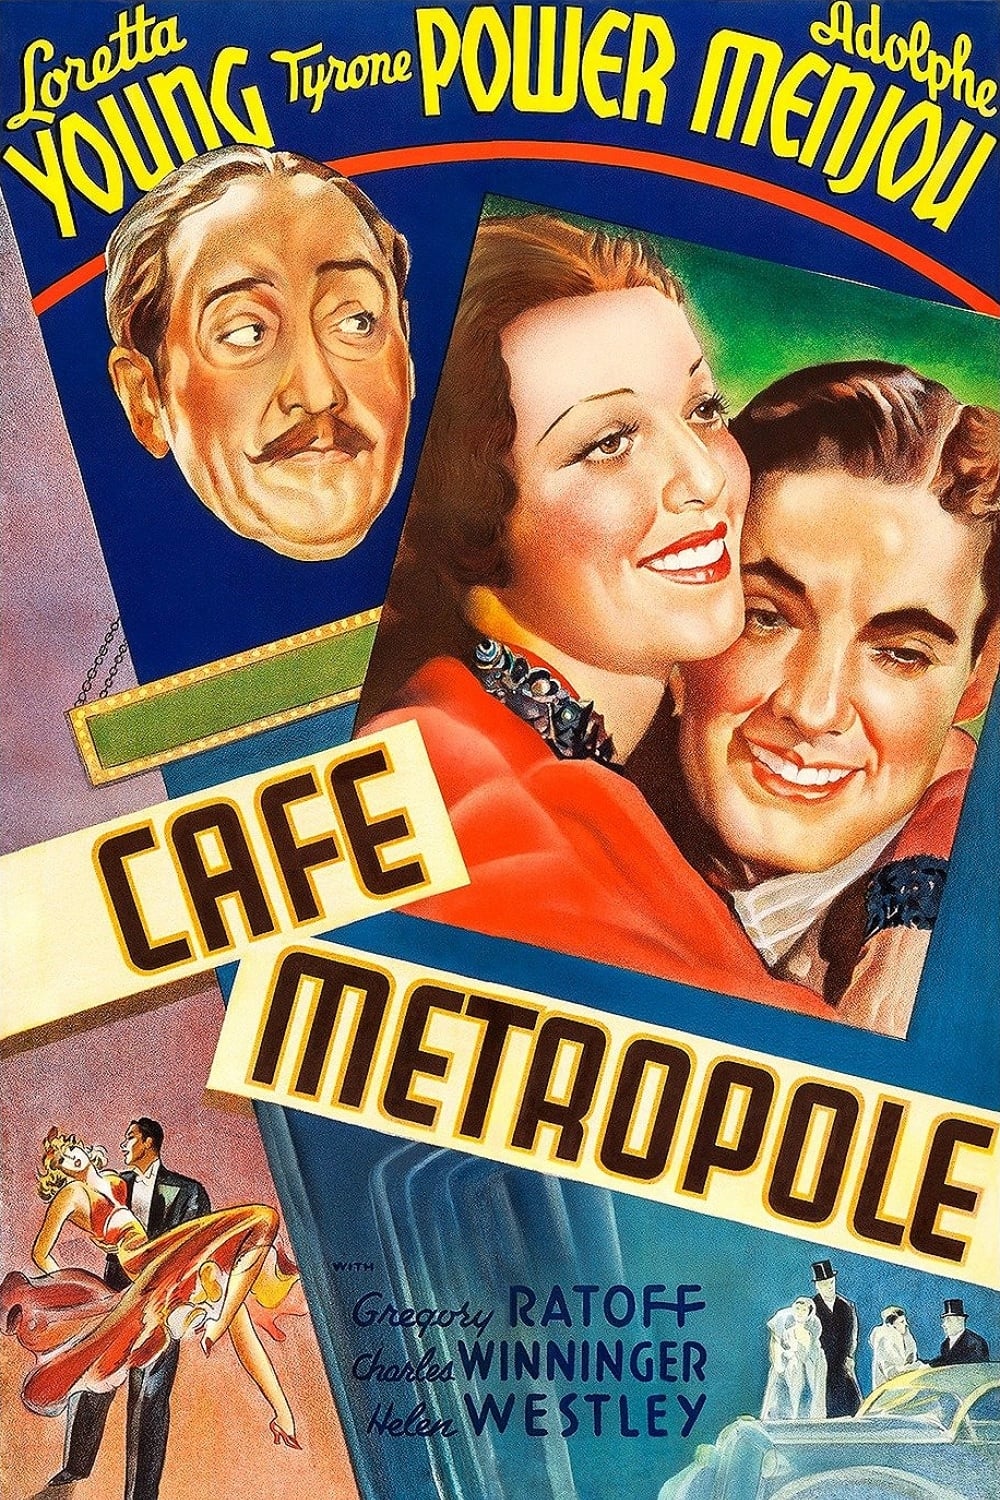 Café Metropol